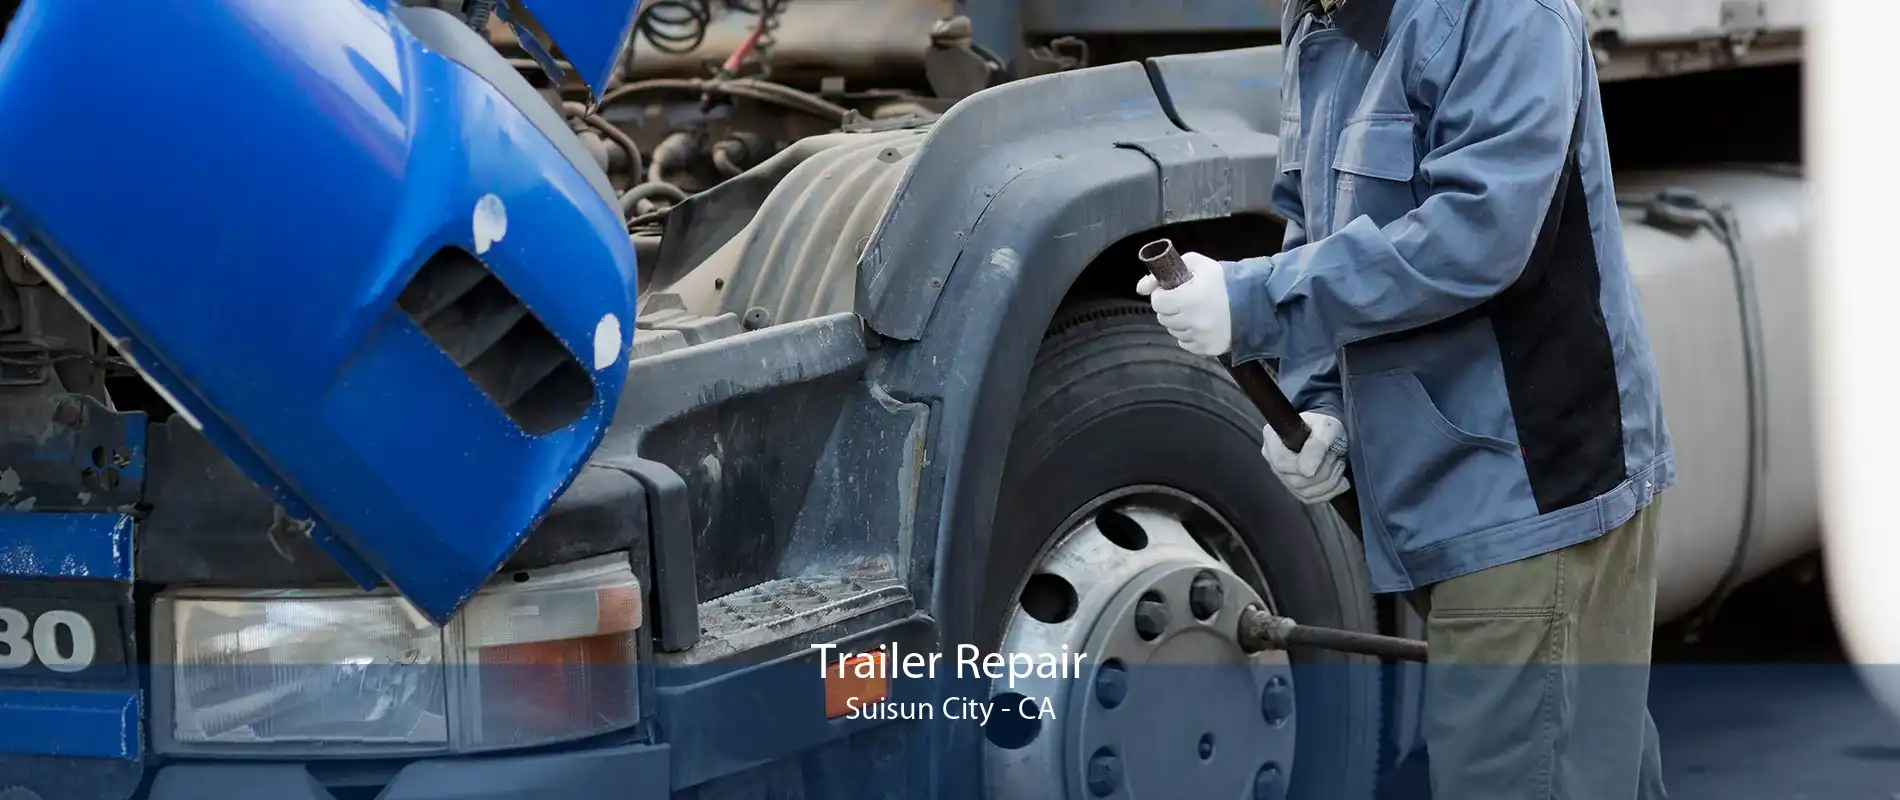 Trailer Repair Suisun City - CA